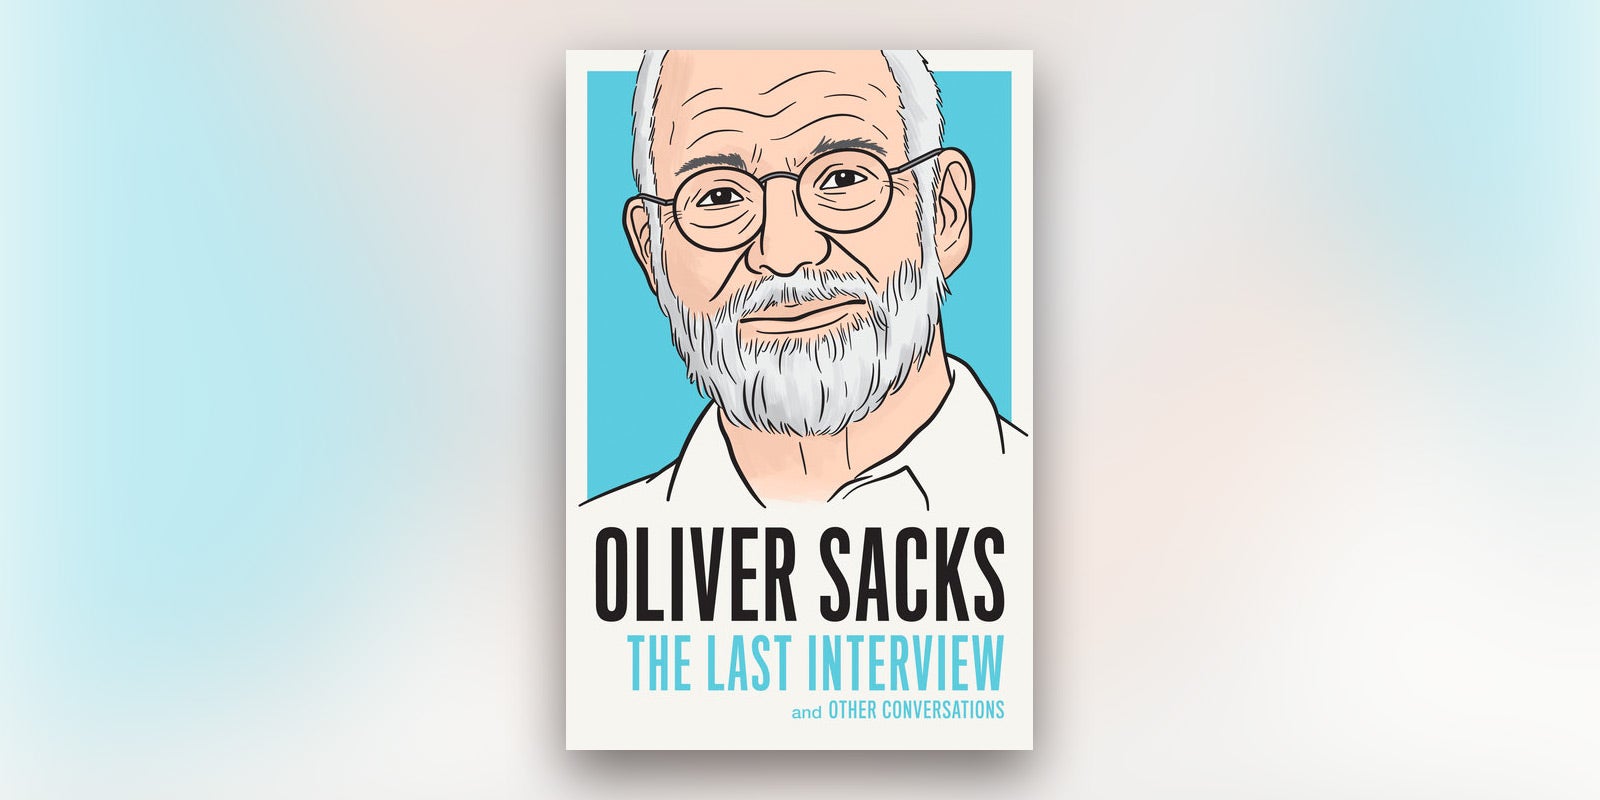 Oliver Sacks Dies at 82